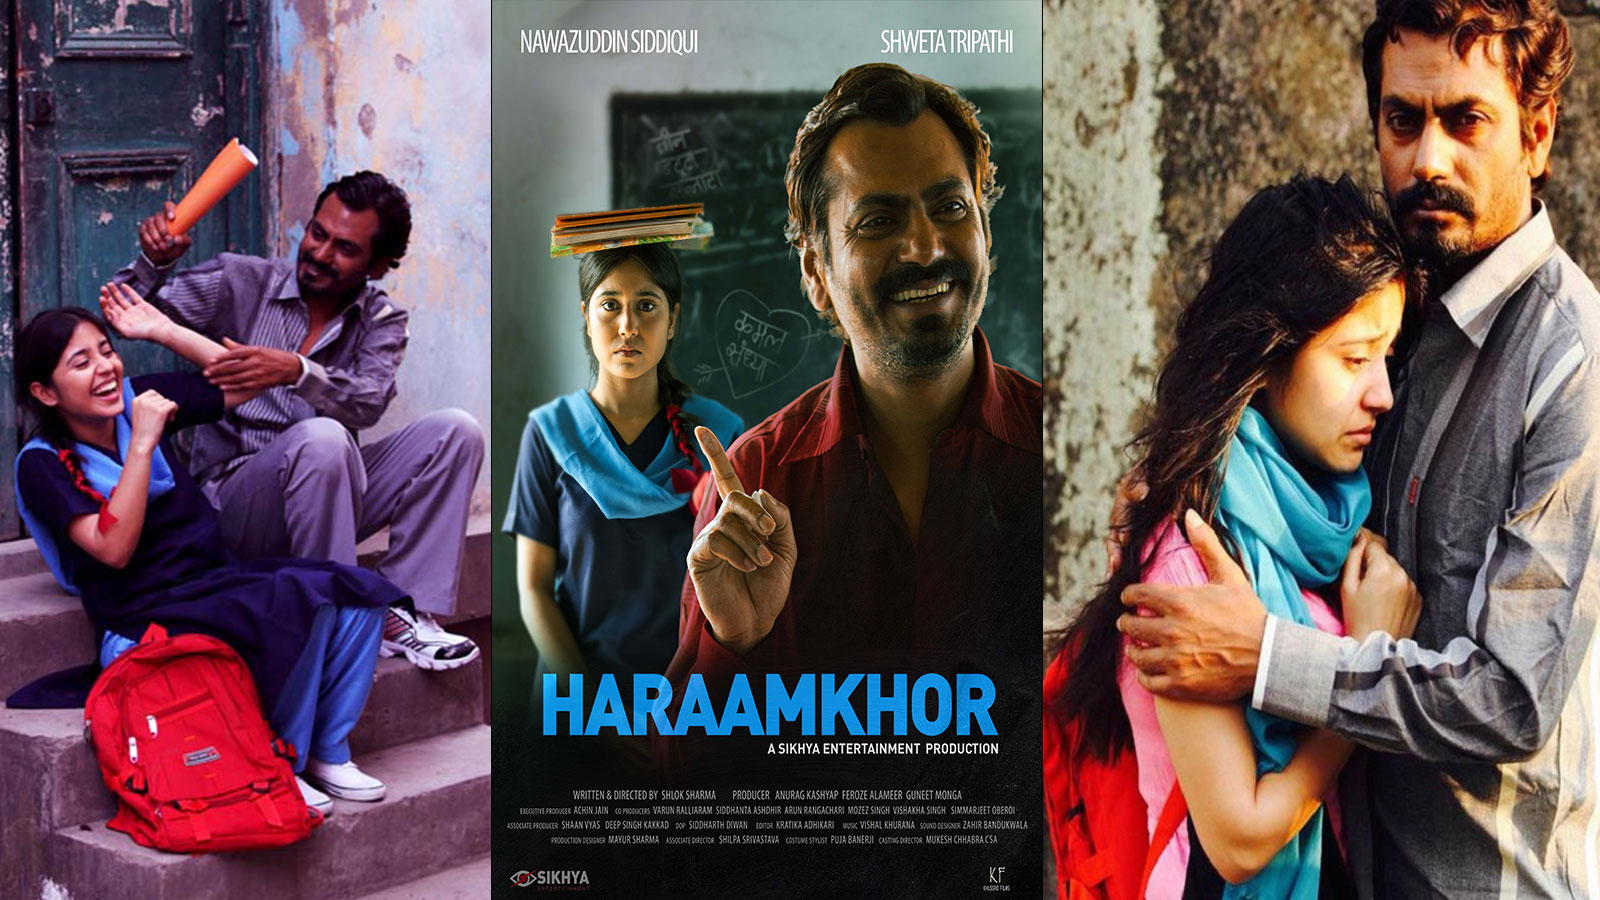 Shot ‘Haraamkhor’ in 16 days: Director Shlock Sharma